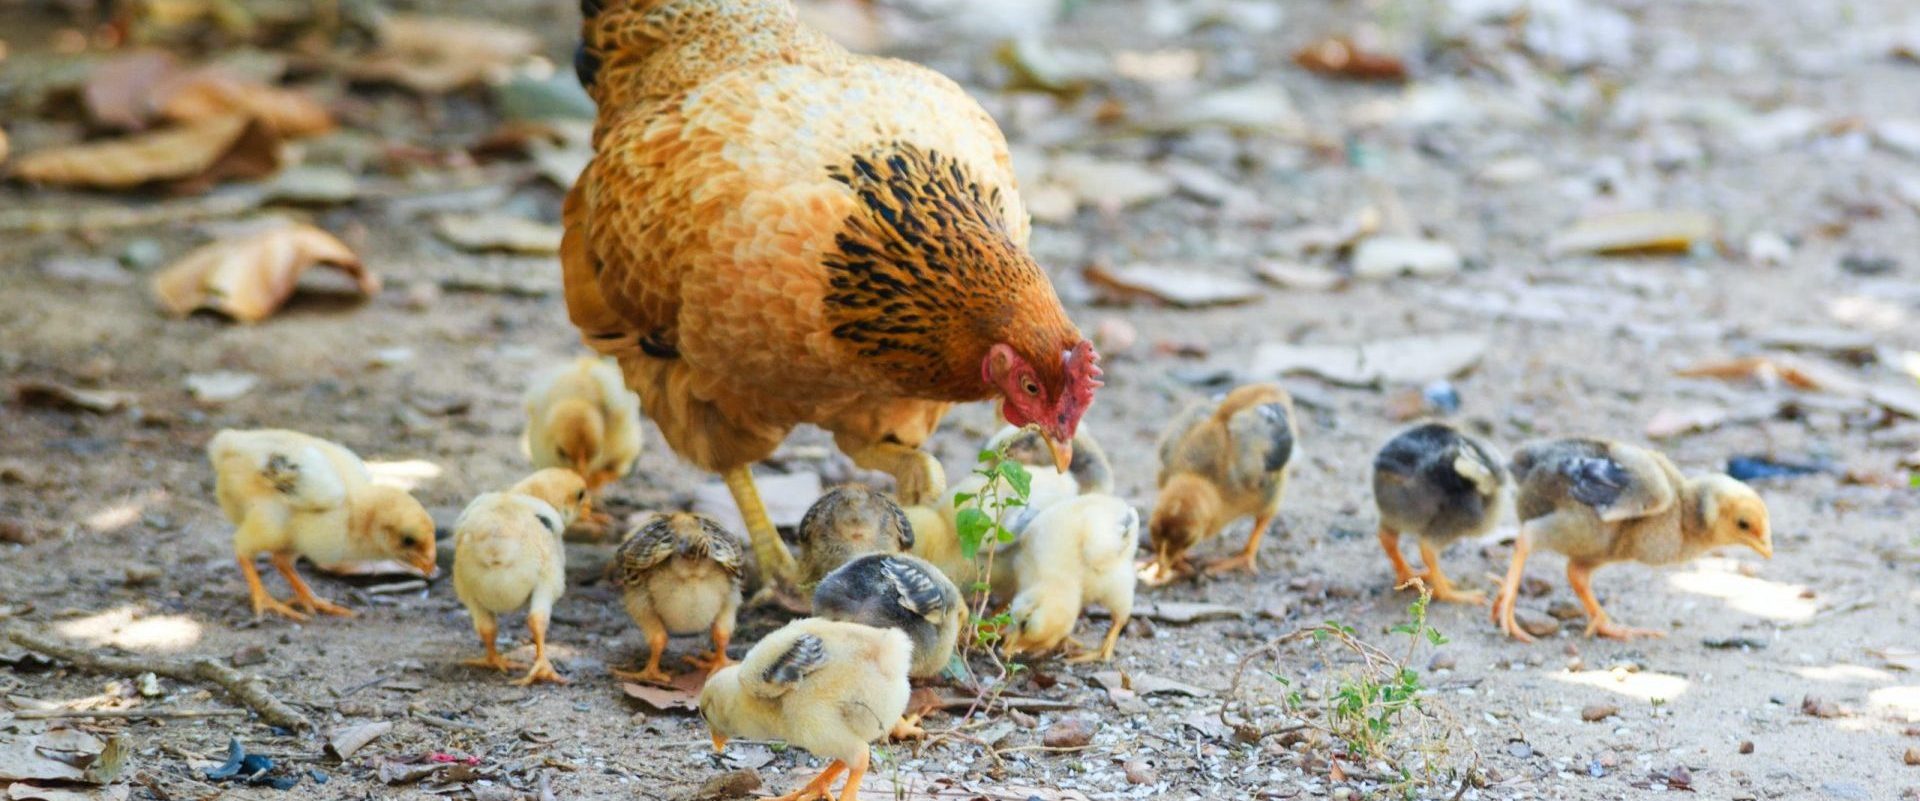 Выращивание цыплят - уход за цыплятами и кормление